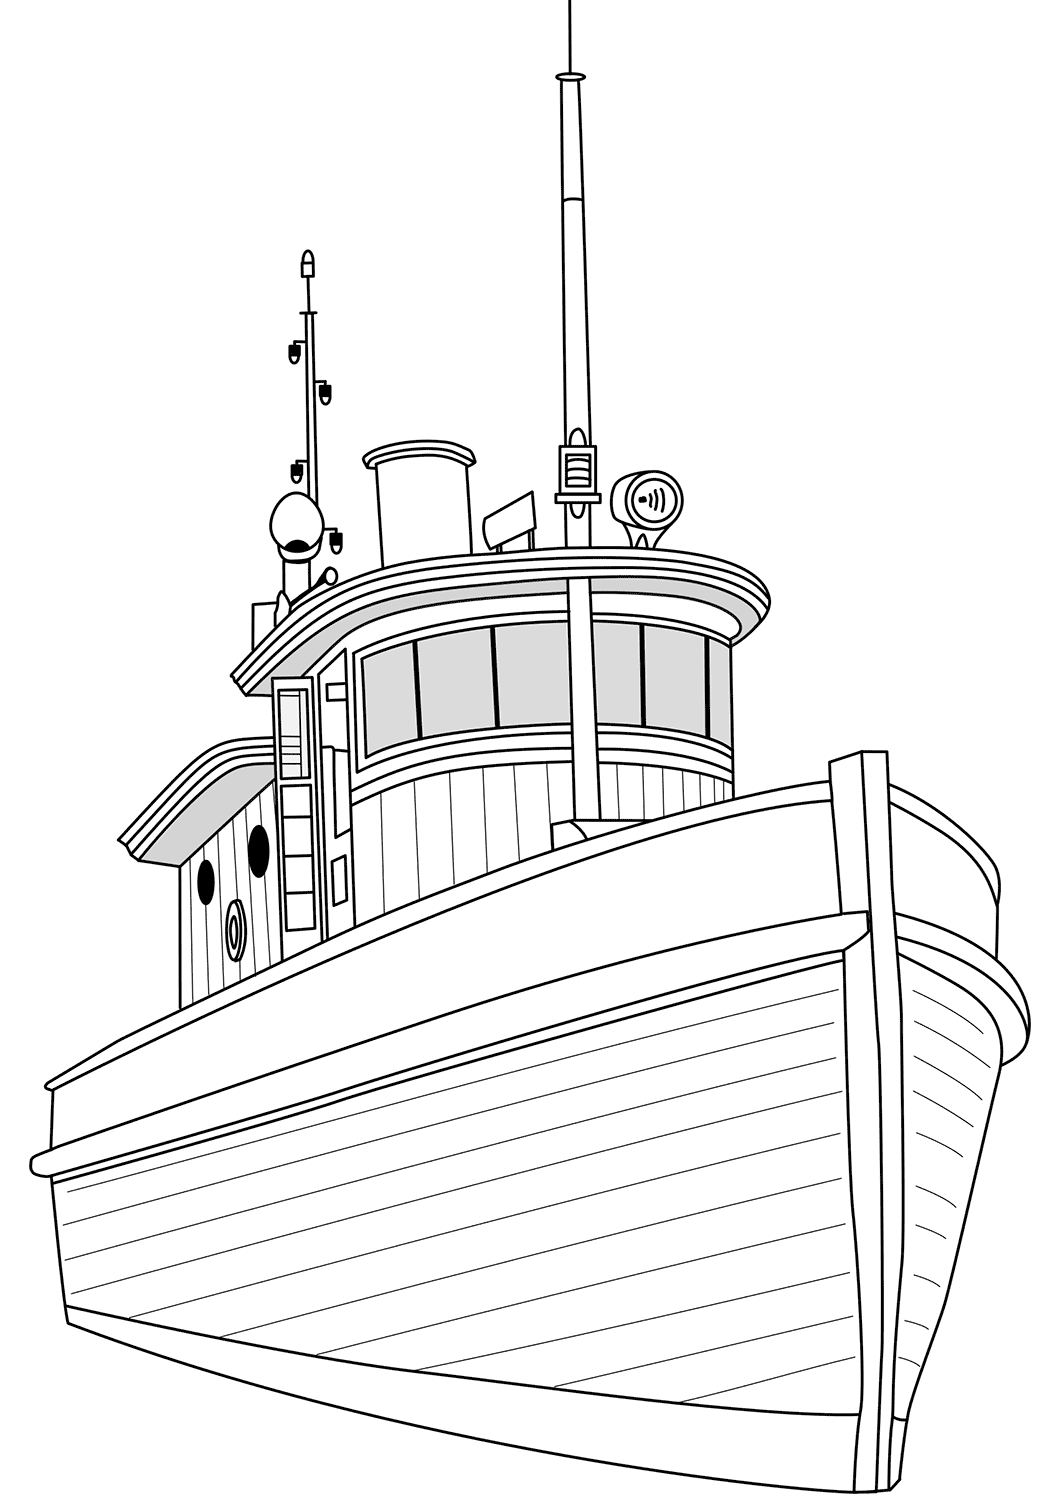 Vẽ tàu thủy đẹp  Hướng dẫn vẽ tàu thủy  MS Paint  Tin học lớp 4  HOW TO  DRAW SHIP EASY MS PAINT  YouTube